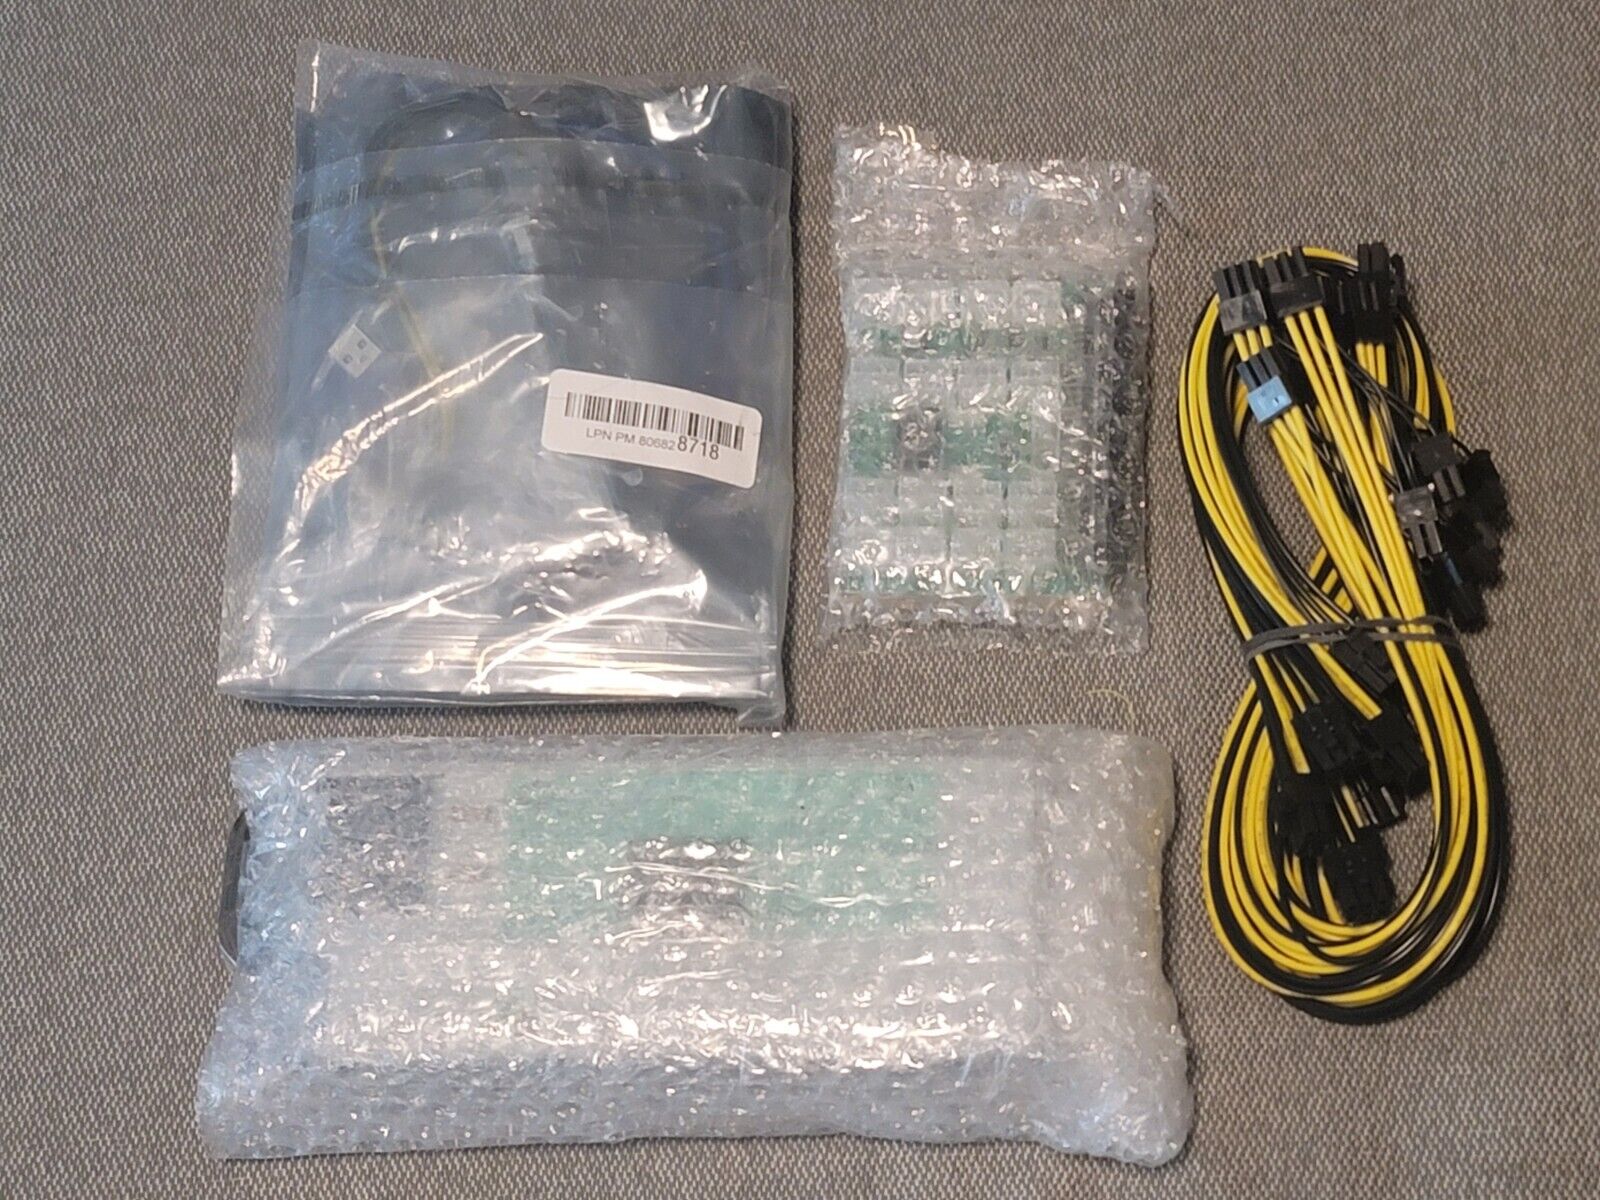 1200 Watt HP 110-240V PSU Kit w/ Breakout Board, Cables, PCIE 1x To 16x Riser